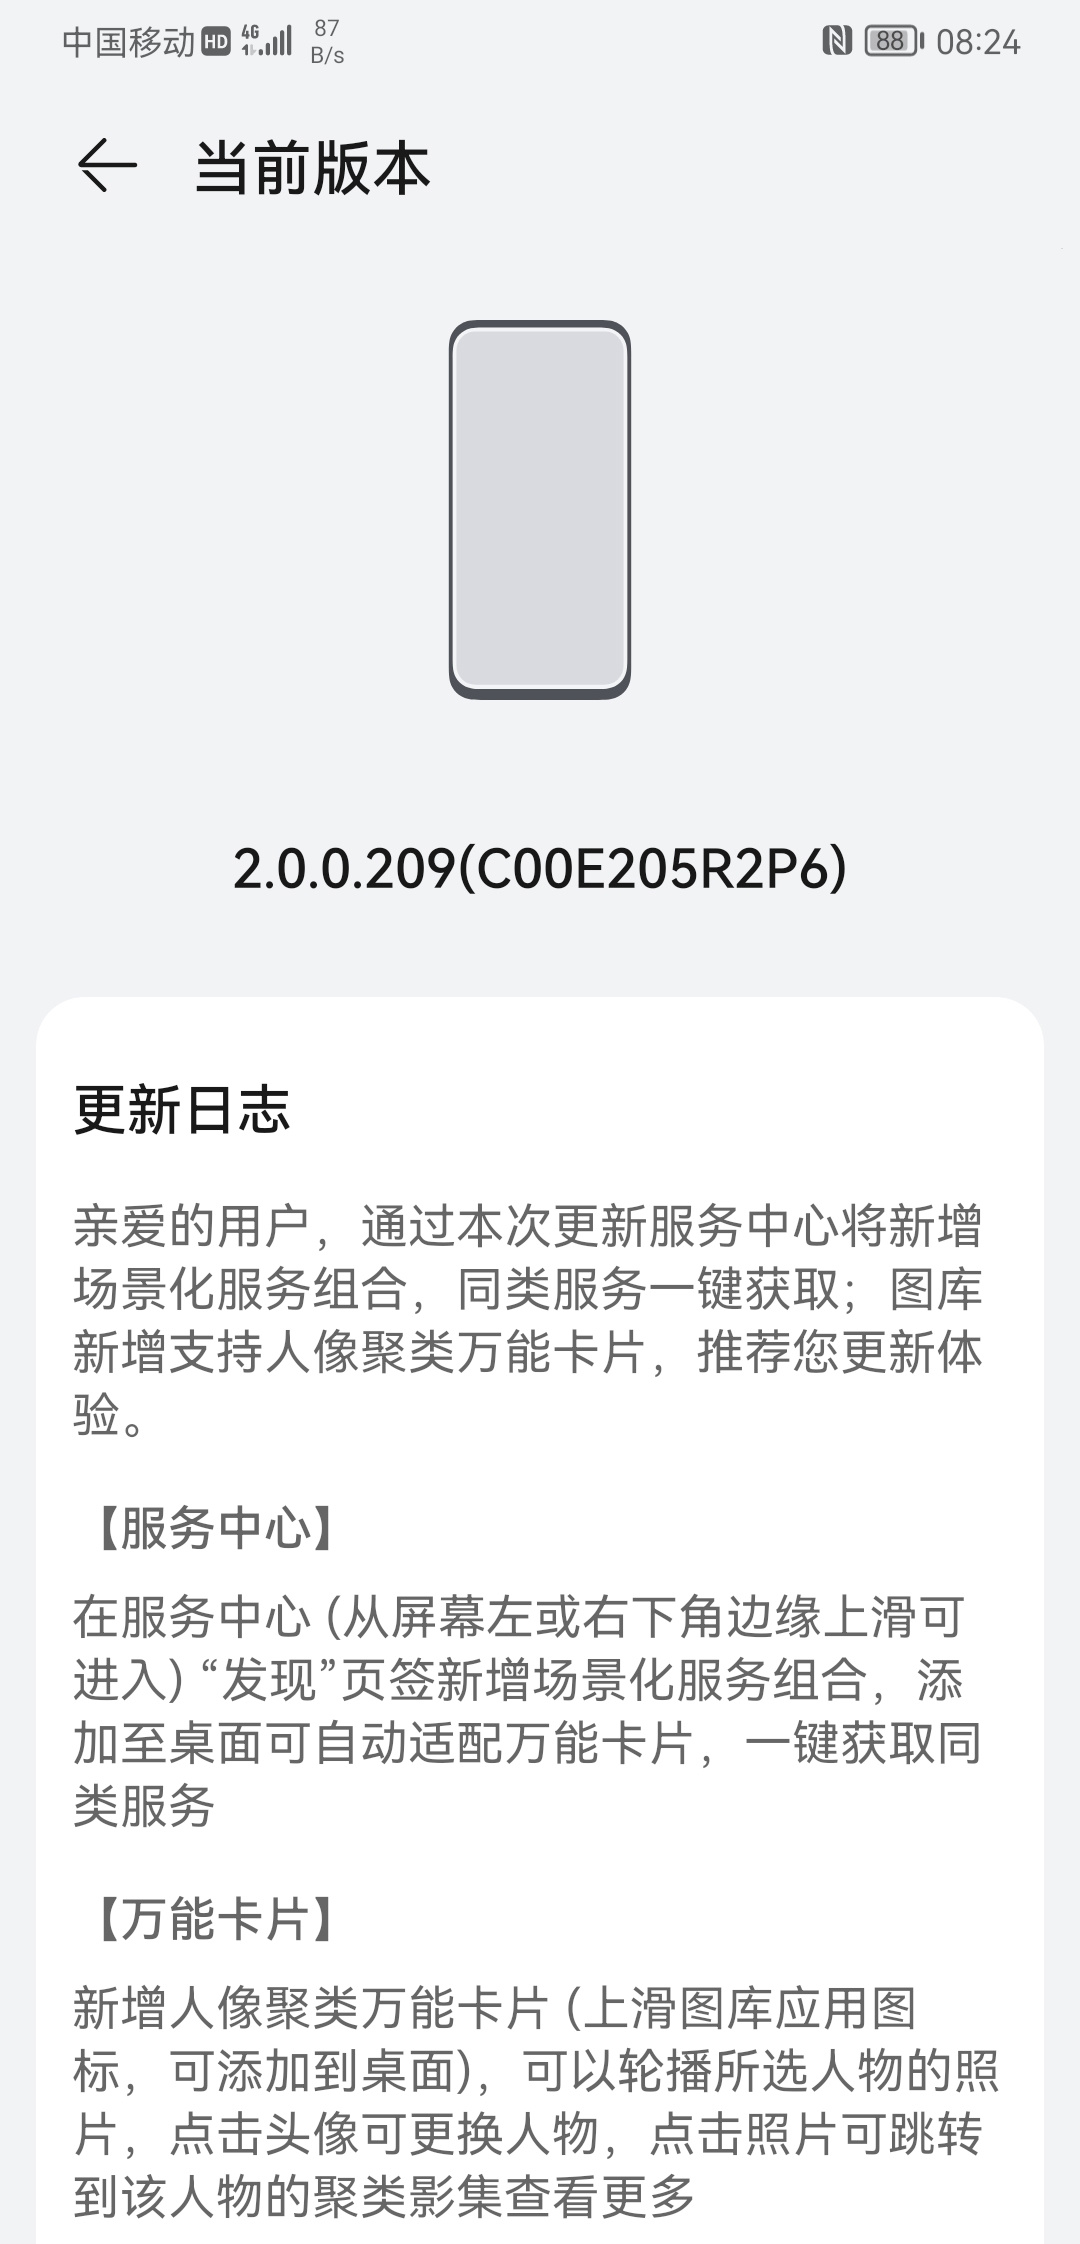 Huawei Mate 20 update HarmonyOS 2.0.0.209